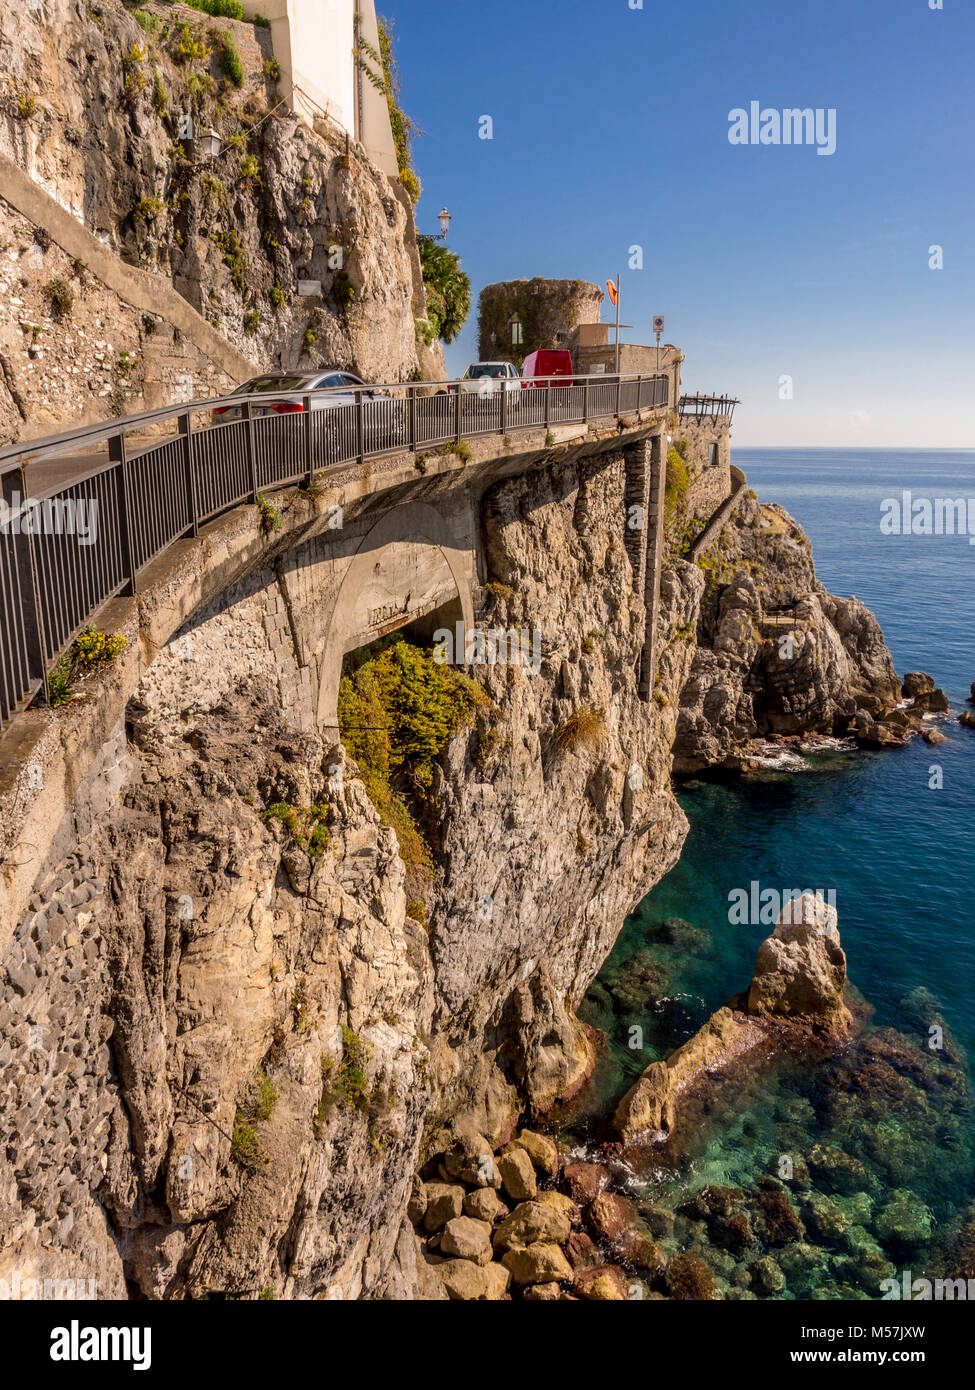 Amalfi coast road, Bay of Salerno, Italy. Stock Photo